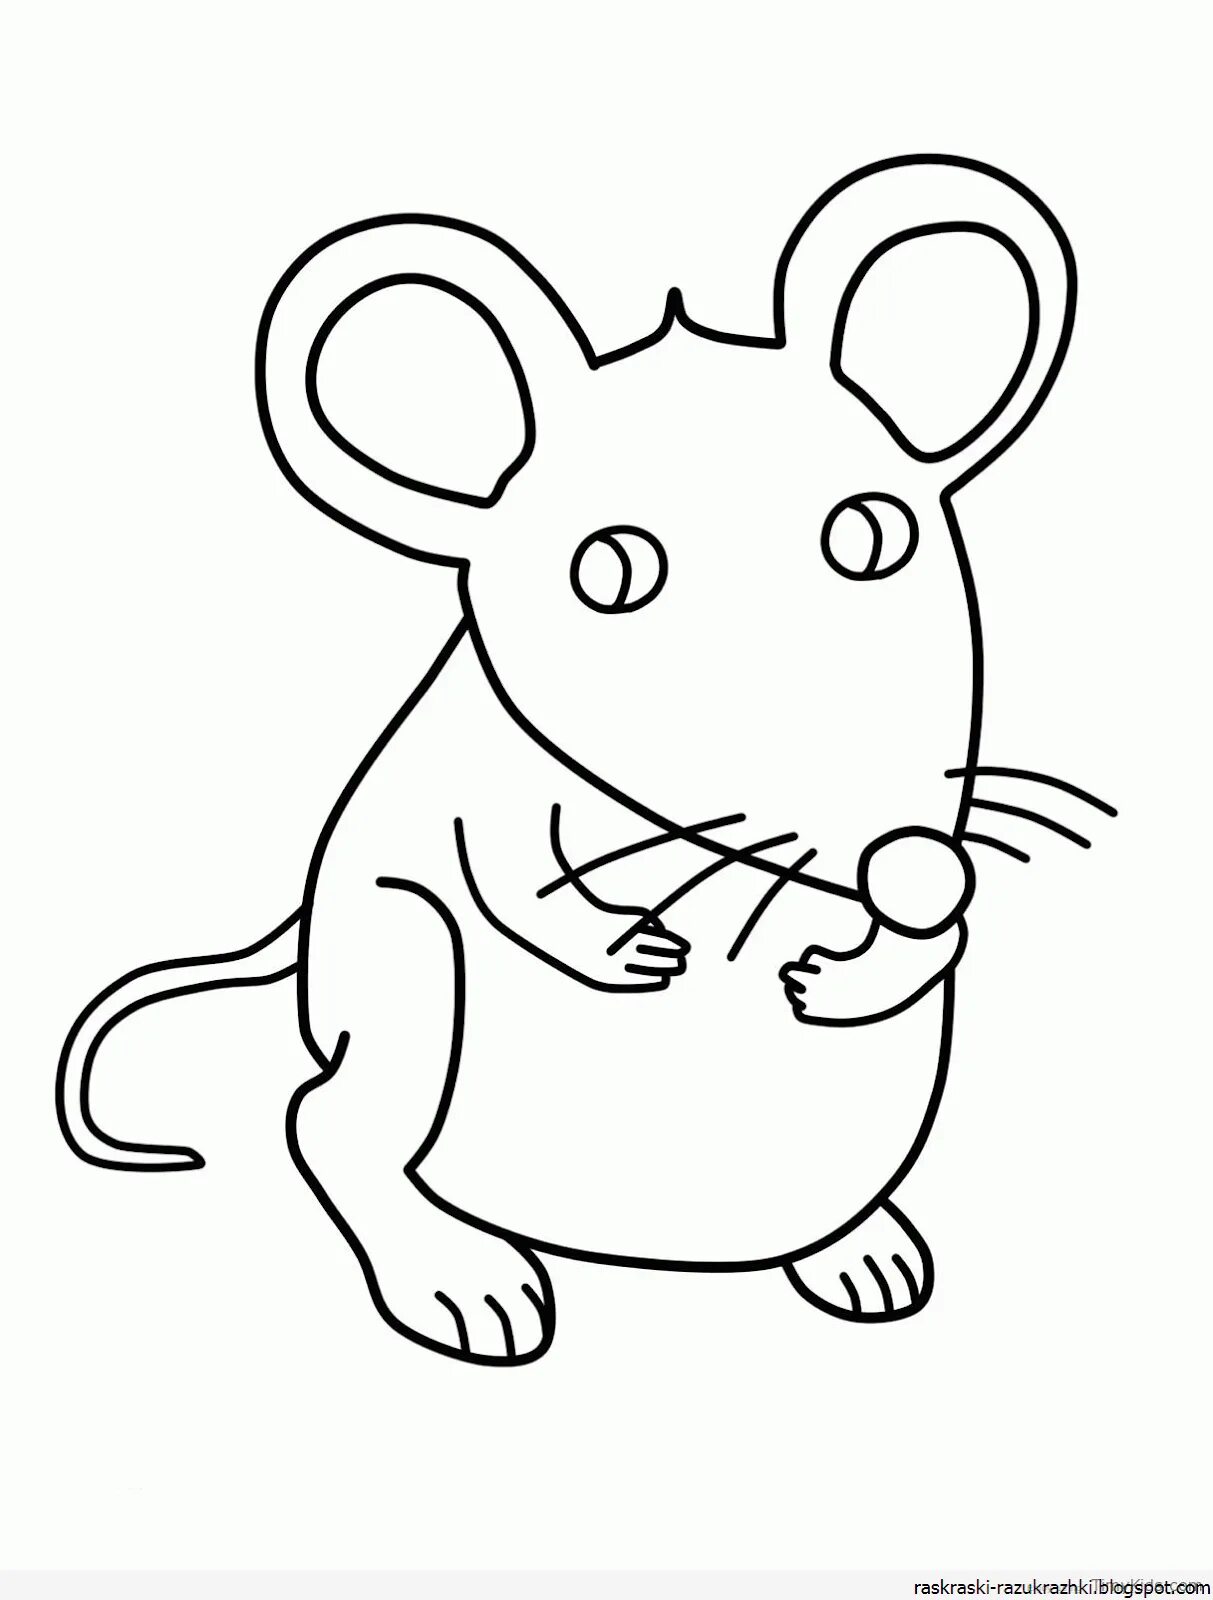 Раскраска мышка. Раскраска мышонок. Мышка рисунок. Мышонок раскраска для детей. Раскраска мышь распечатать